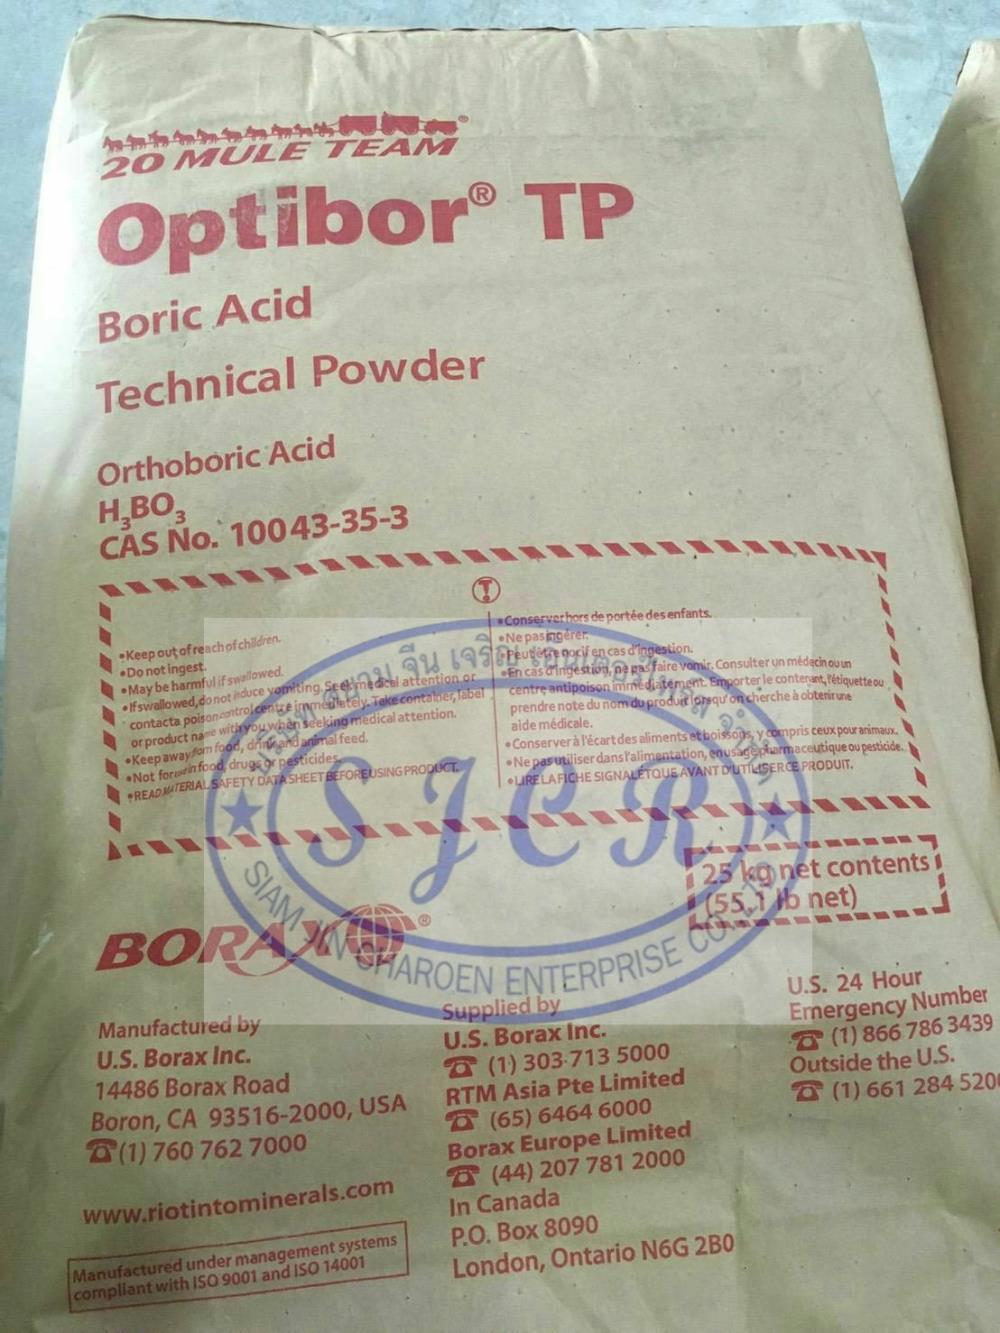 บอริก แอซิด พาวเดอร์ ตราม้า USA.,กรดบอริก,Optibor TP,Chemicals/Acids/Boric Acid